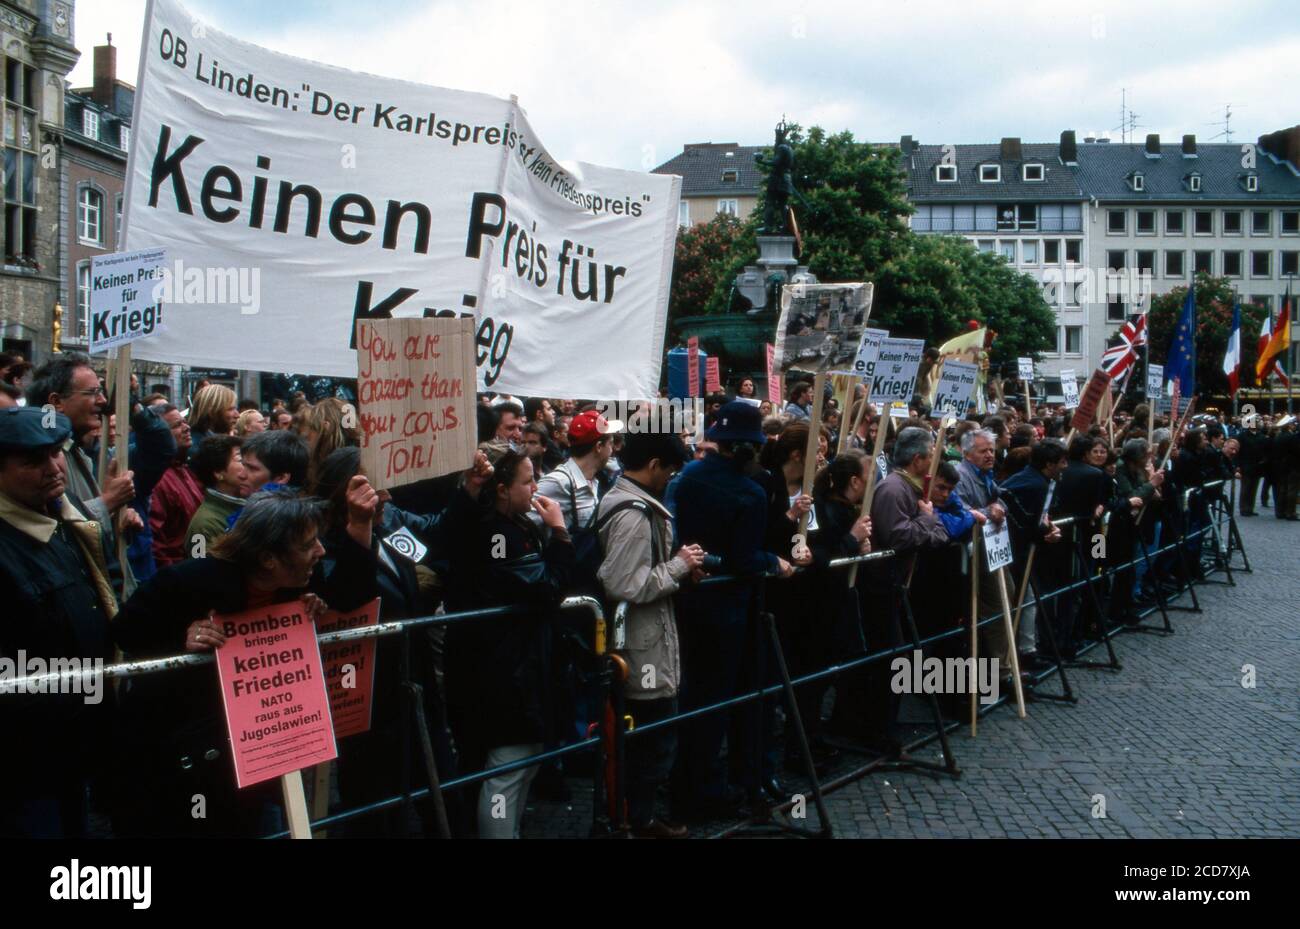 Protestkundgebung vor dem Rathaus anläßlich der Verleihung des Karlspreises der Stadt Aachen an Tony Blair am 13. Maggio 1999. Foto Stock